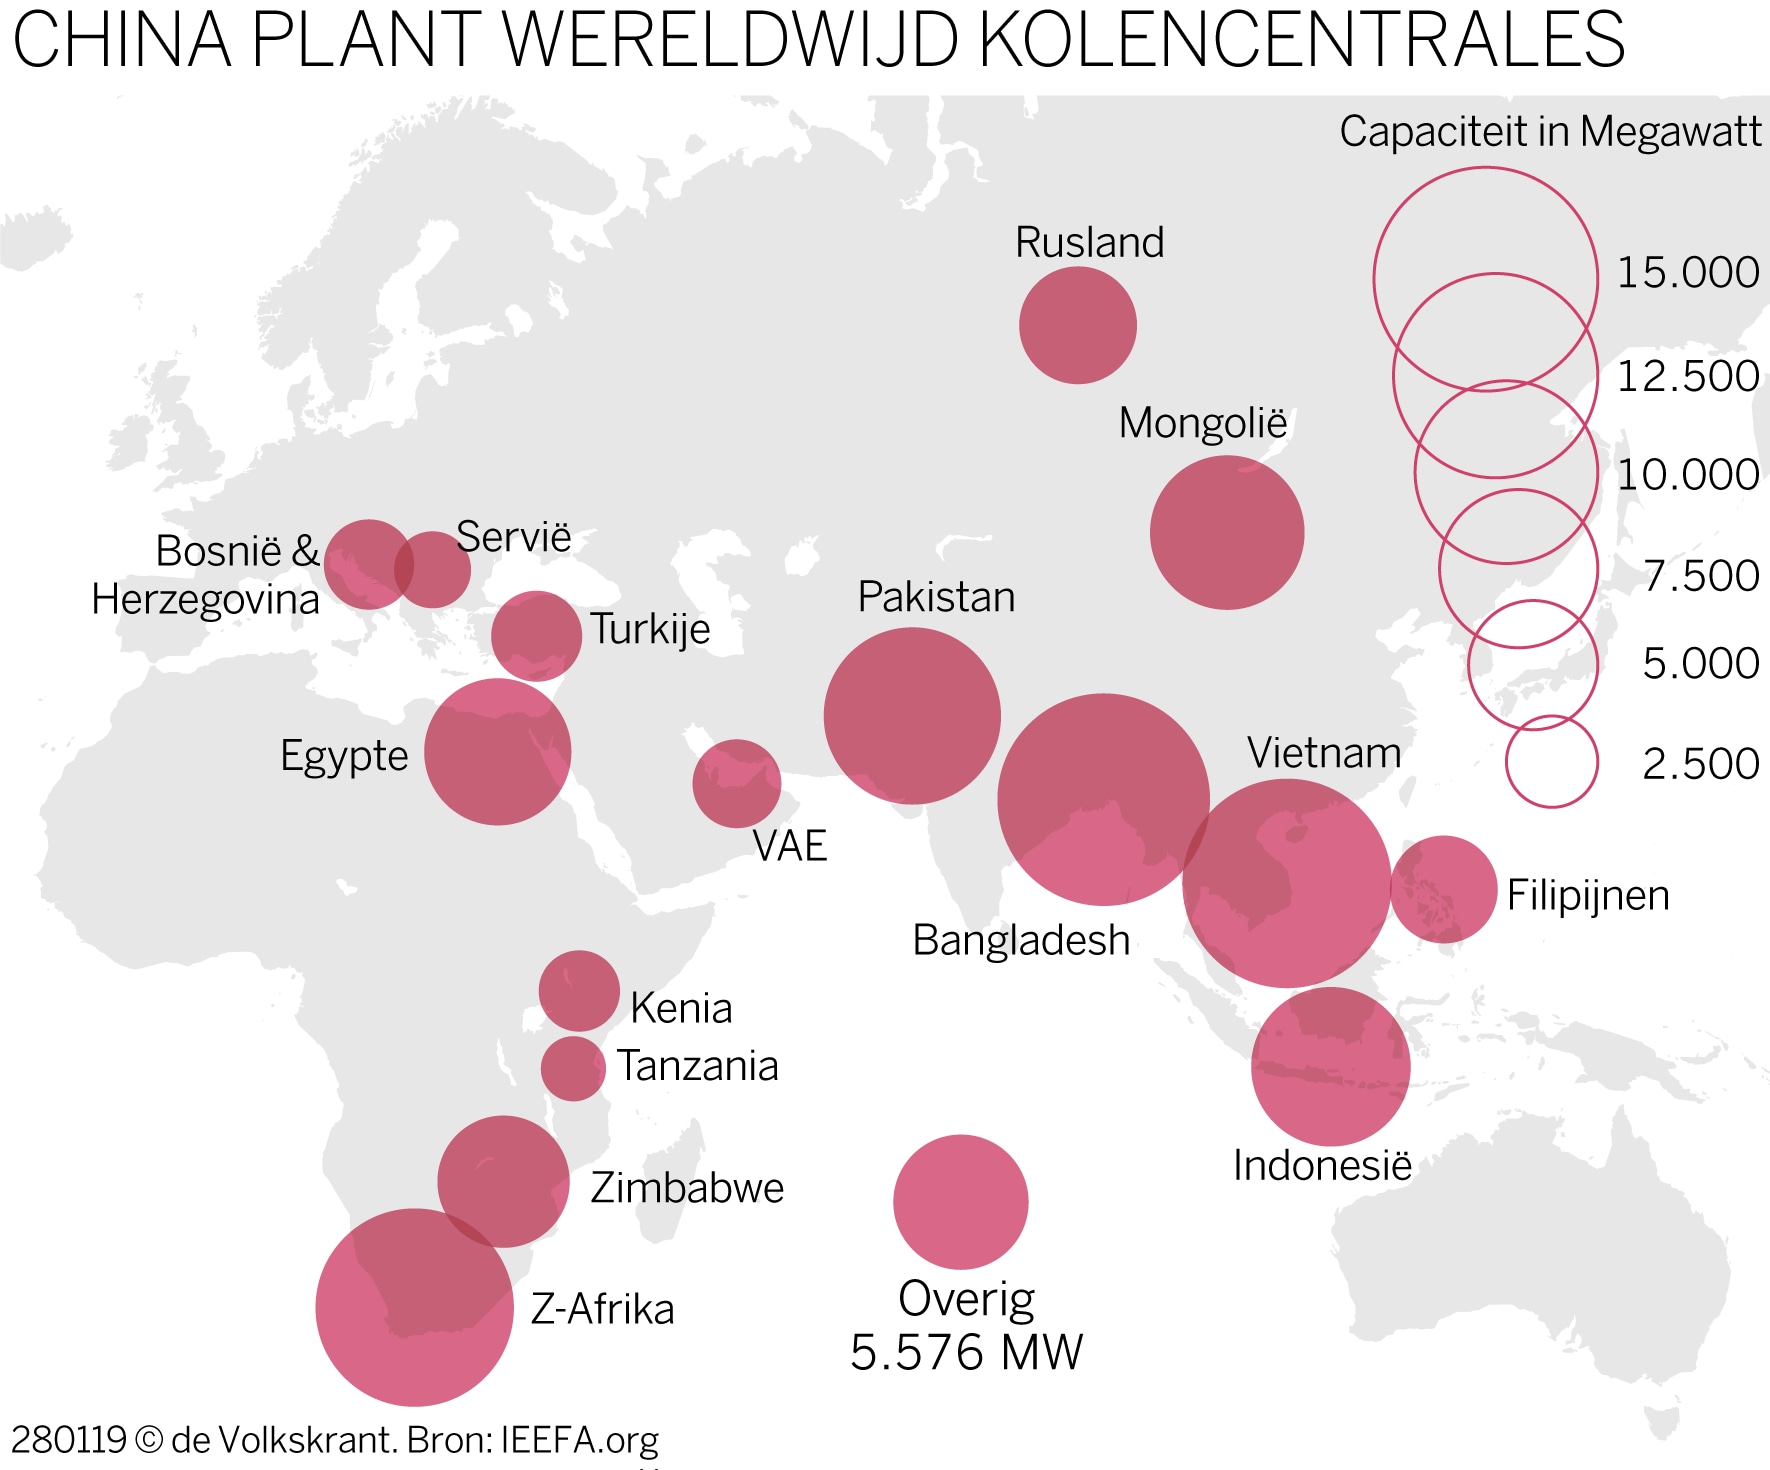 China bouwt windmolens in eigen land... en kolencentrales in de rest van de wereld